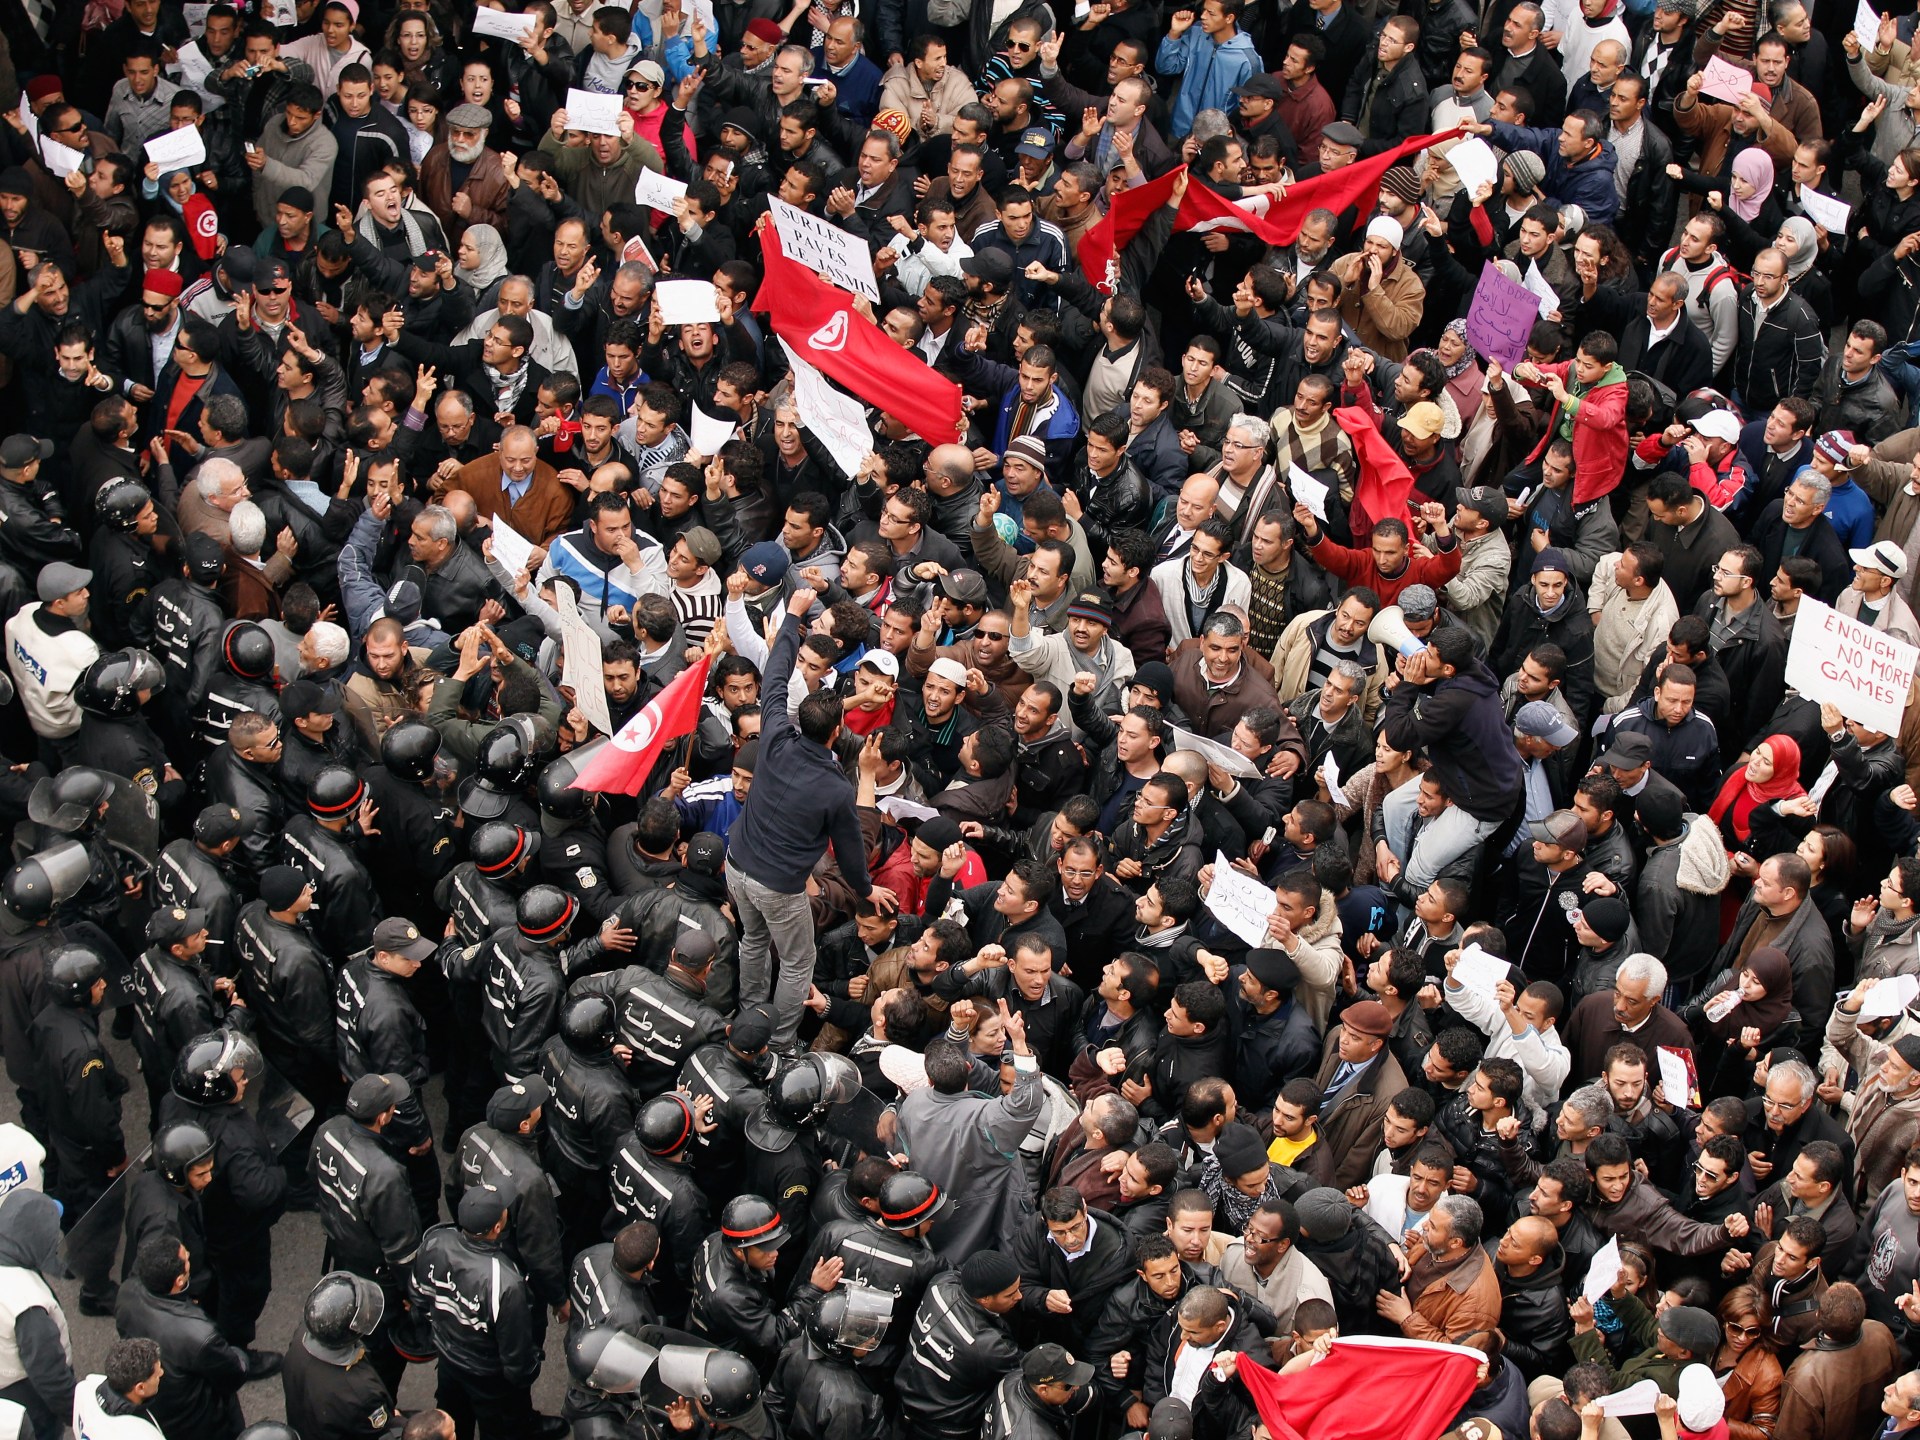 في ذكراها السنوية.. ماذا بقي من الثورة التونسية؟ | آراء – البوكس نيوز